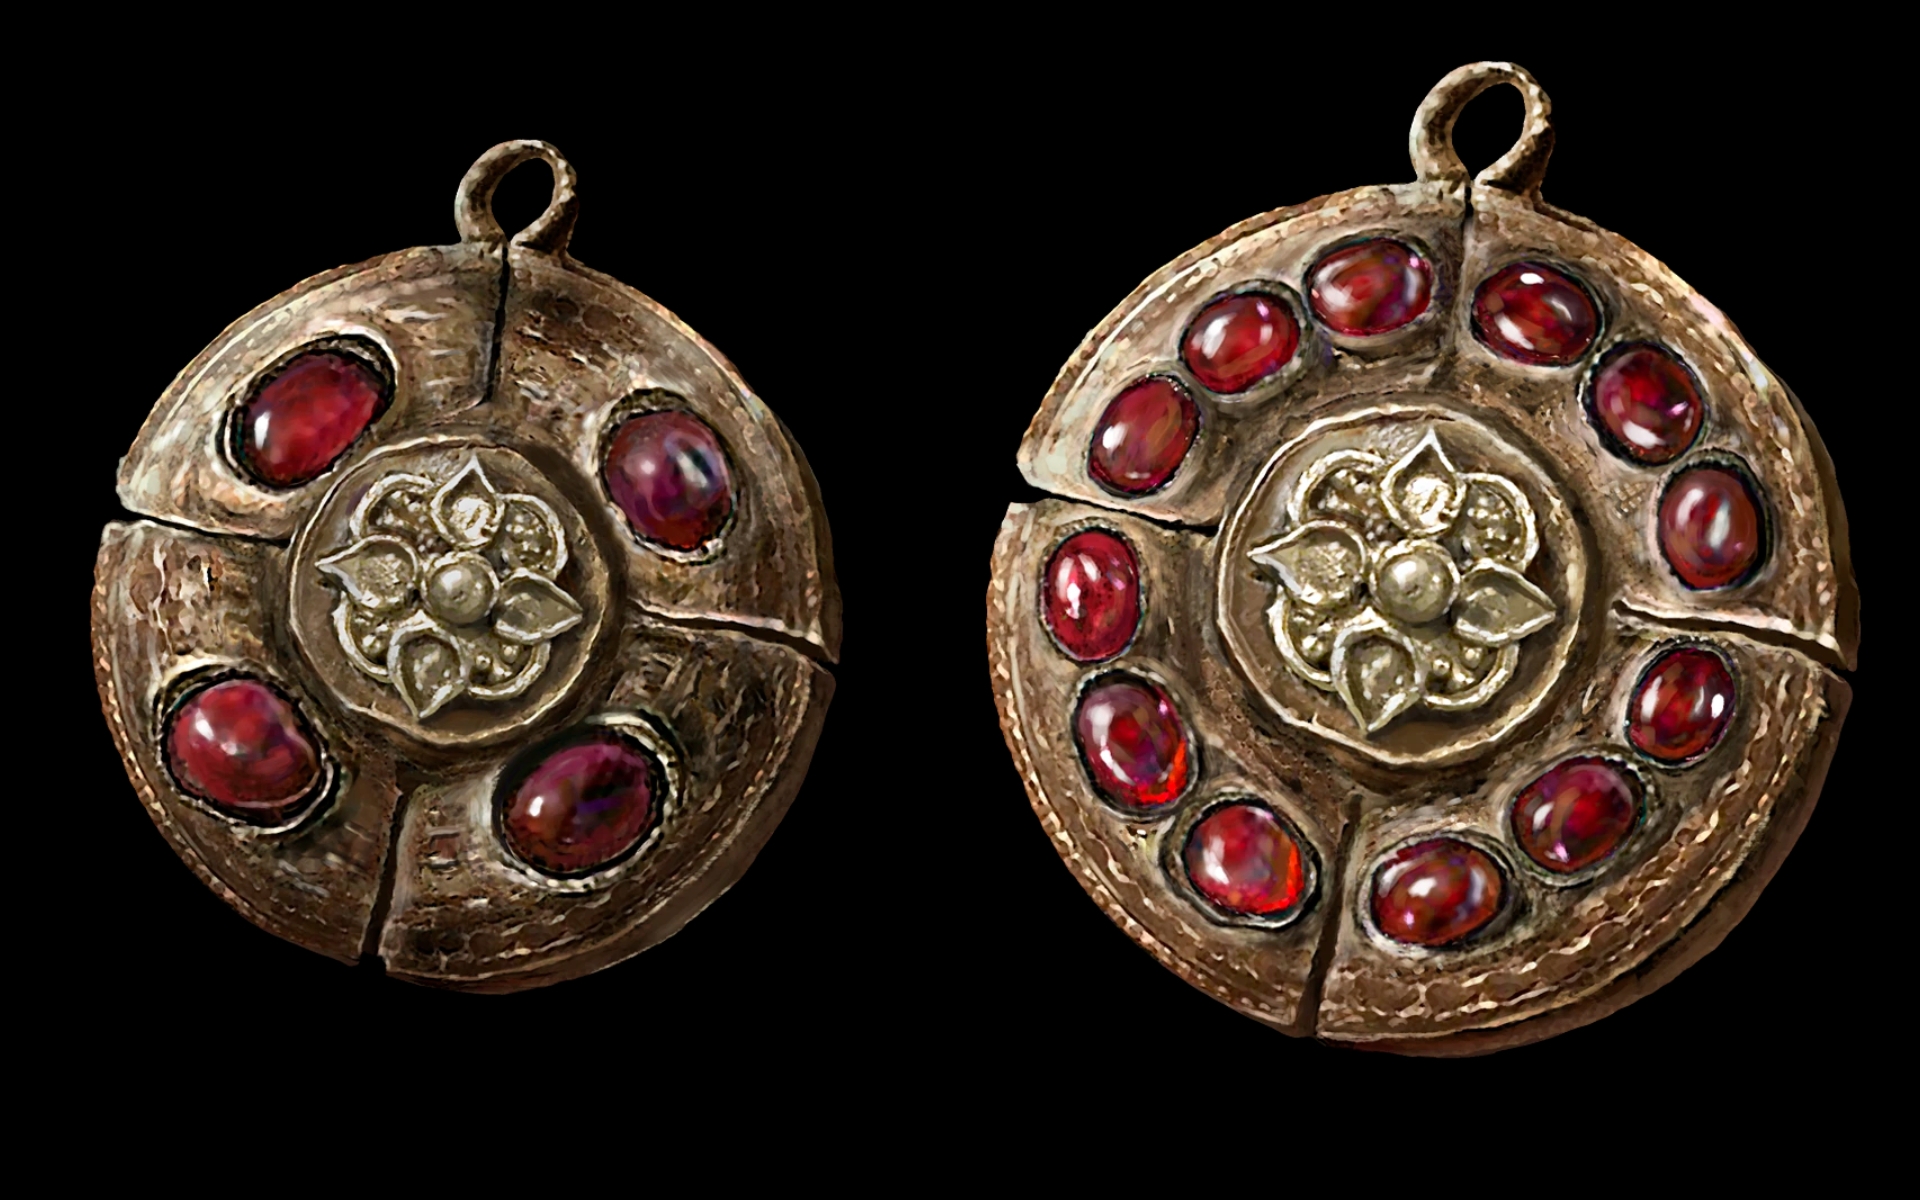 Как получить все медальоны из малинового янтаря в Elden Ring?